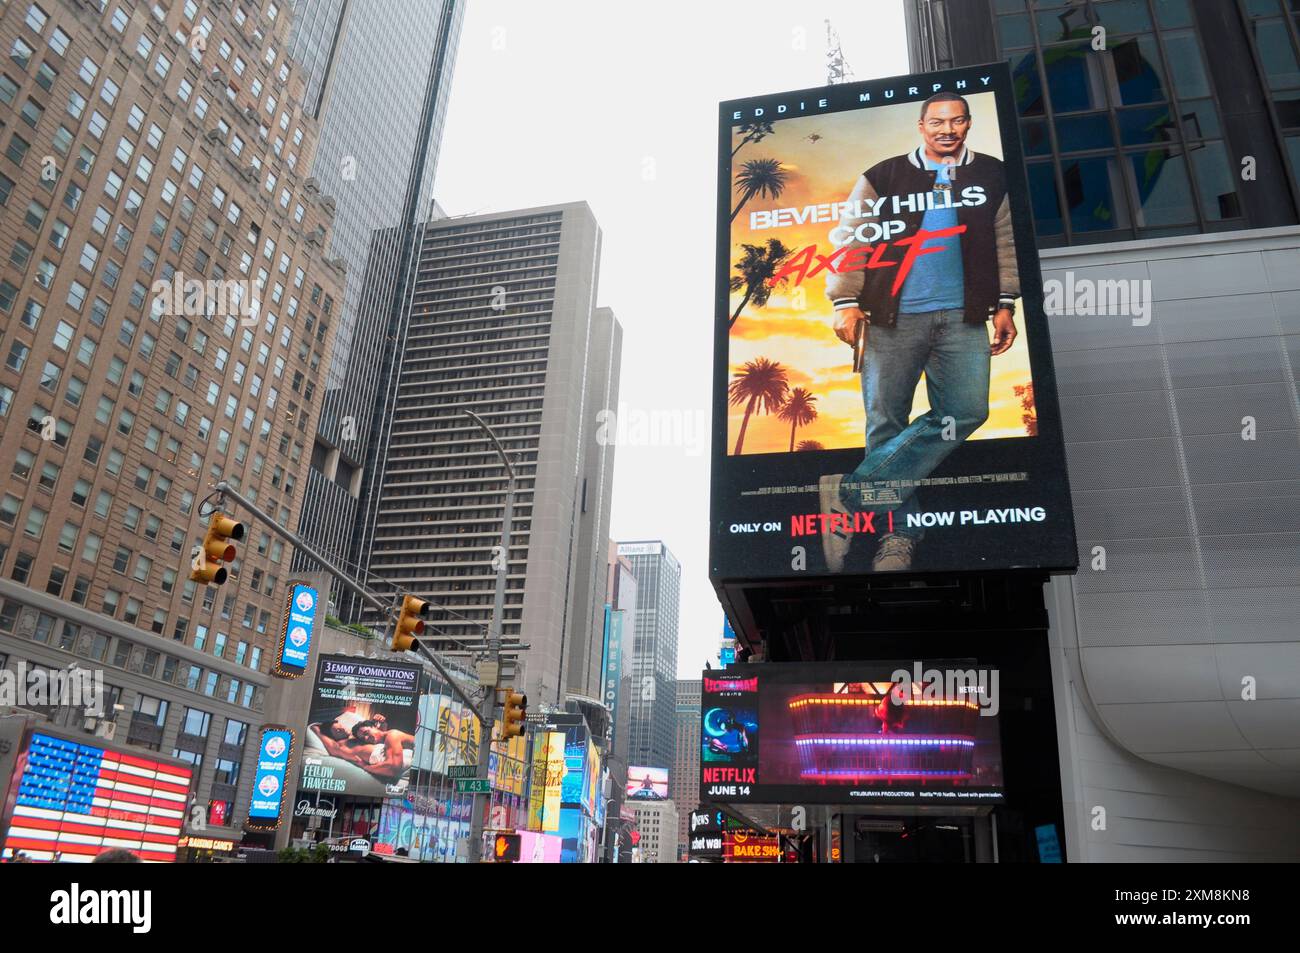 Eine Werbetafel, die den Film bewirbt, Beverly Hills Cop: Axel F, ist am Times Square in Manhattan, New York City zu sehen. Stockfoto